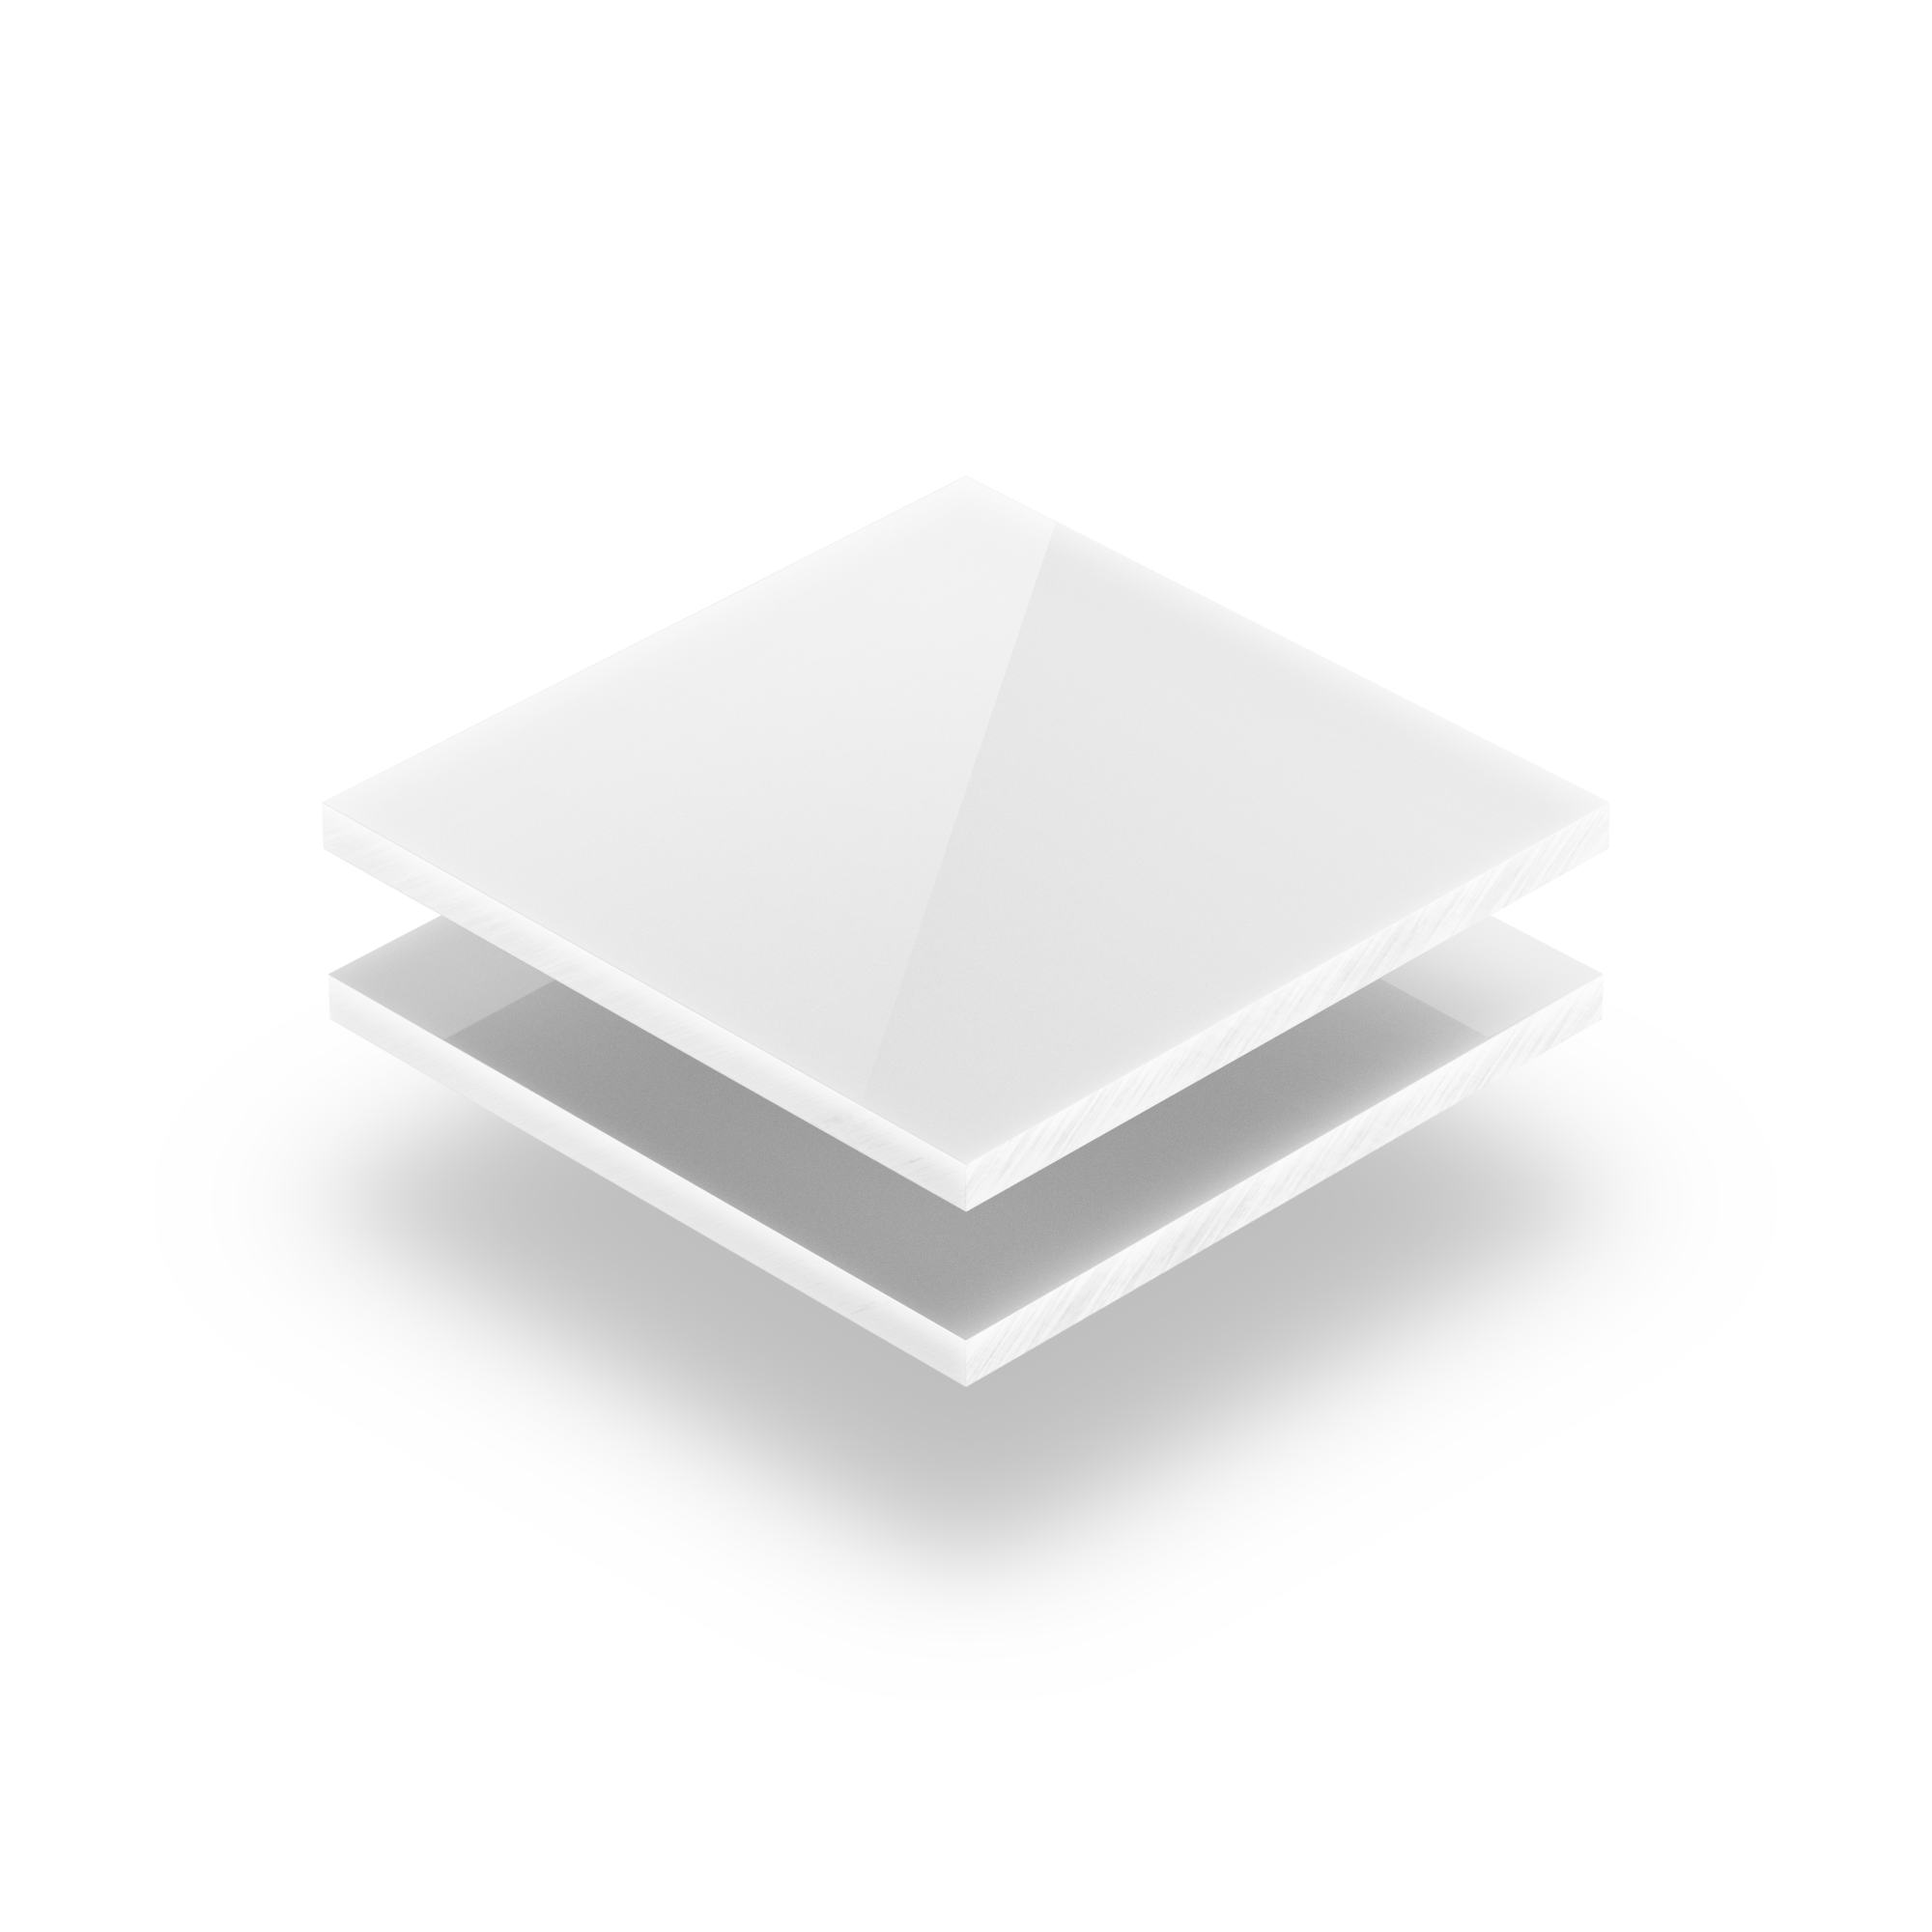 https://plaqueplastique.be/wp-content/uploads/2014/09/Plaque-Plexiglass-blanc-opaque.png